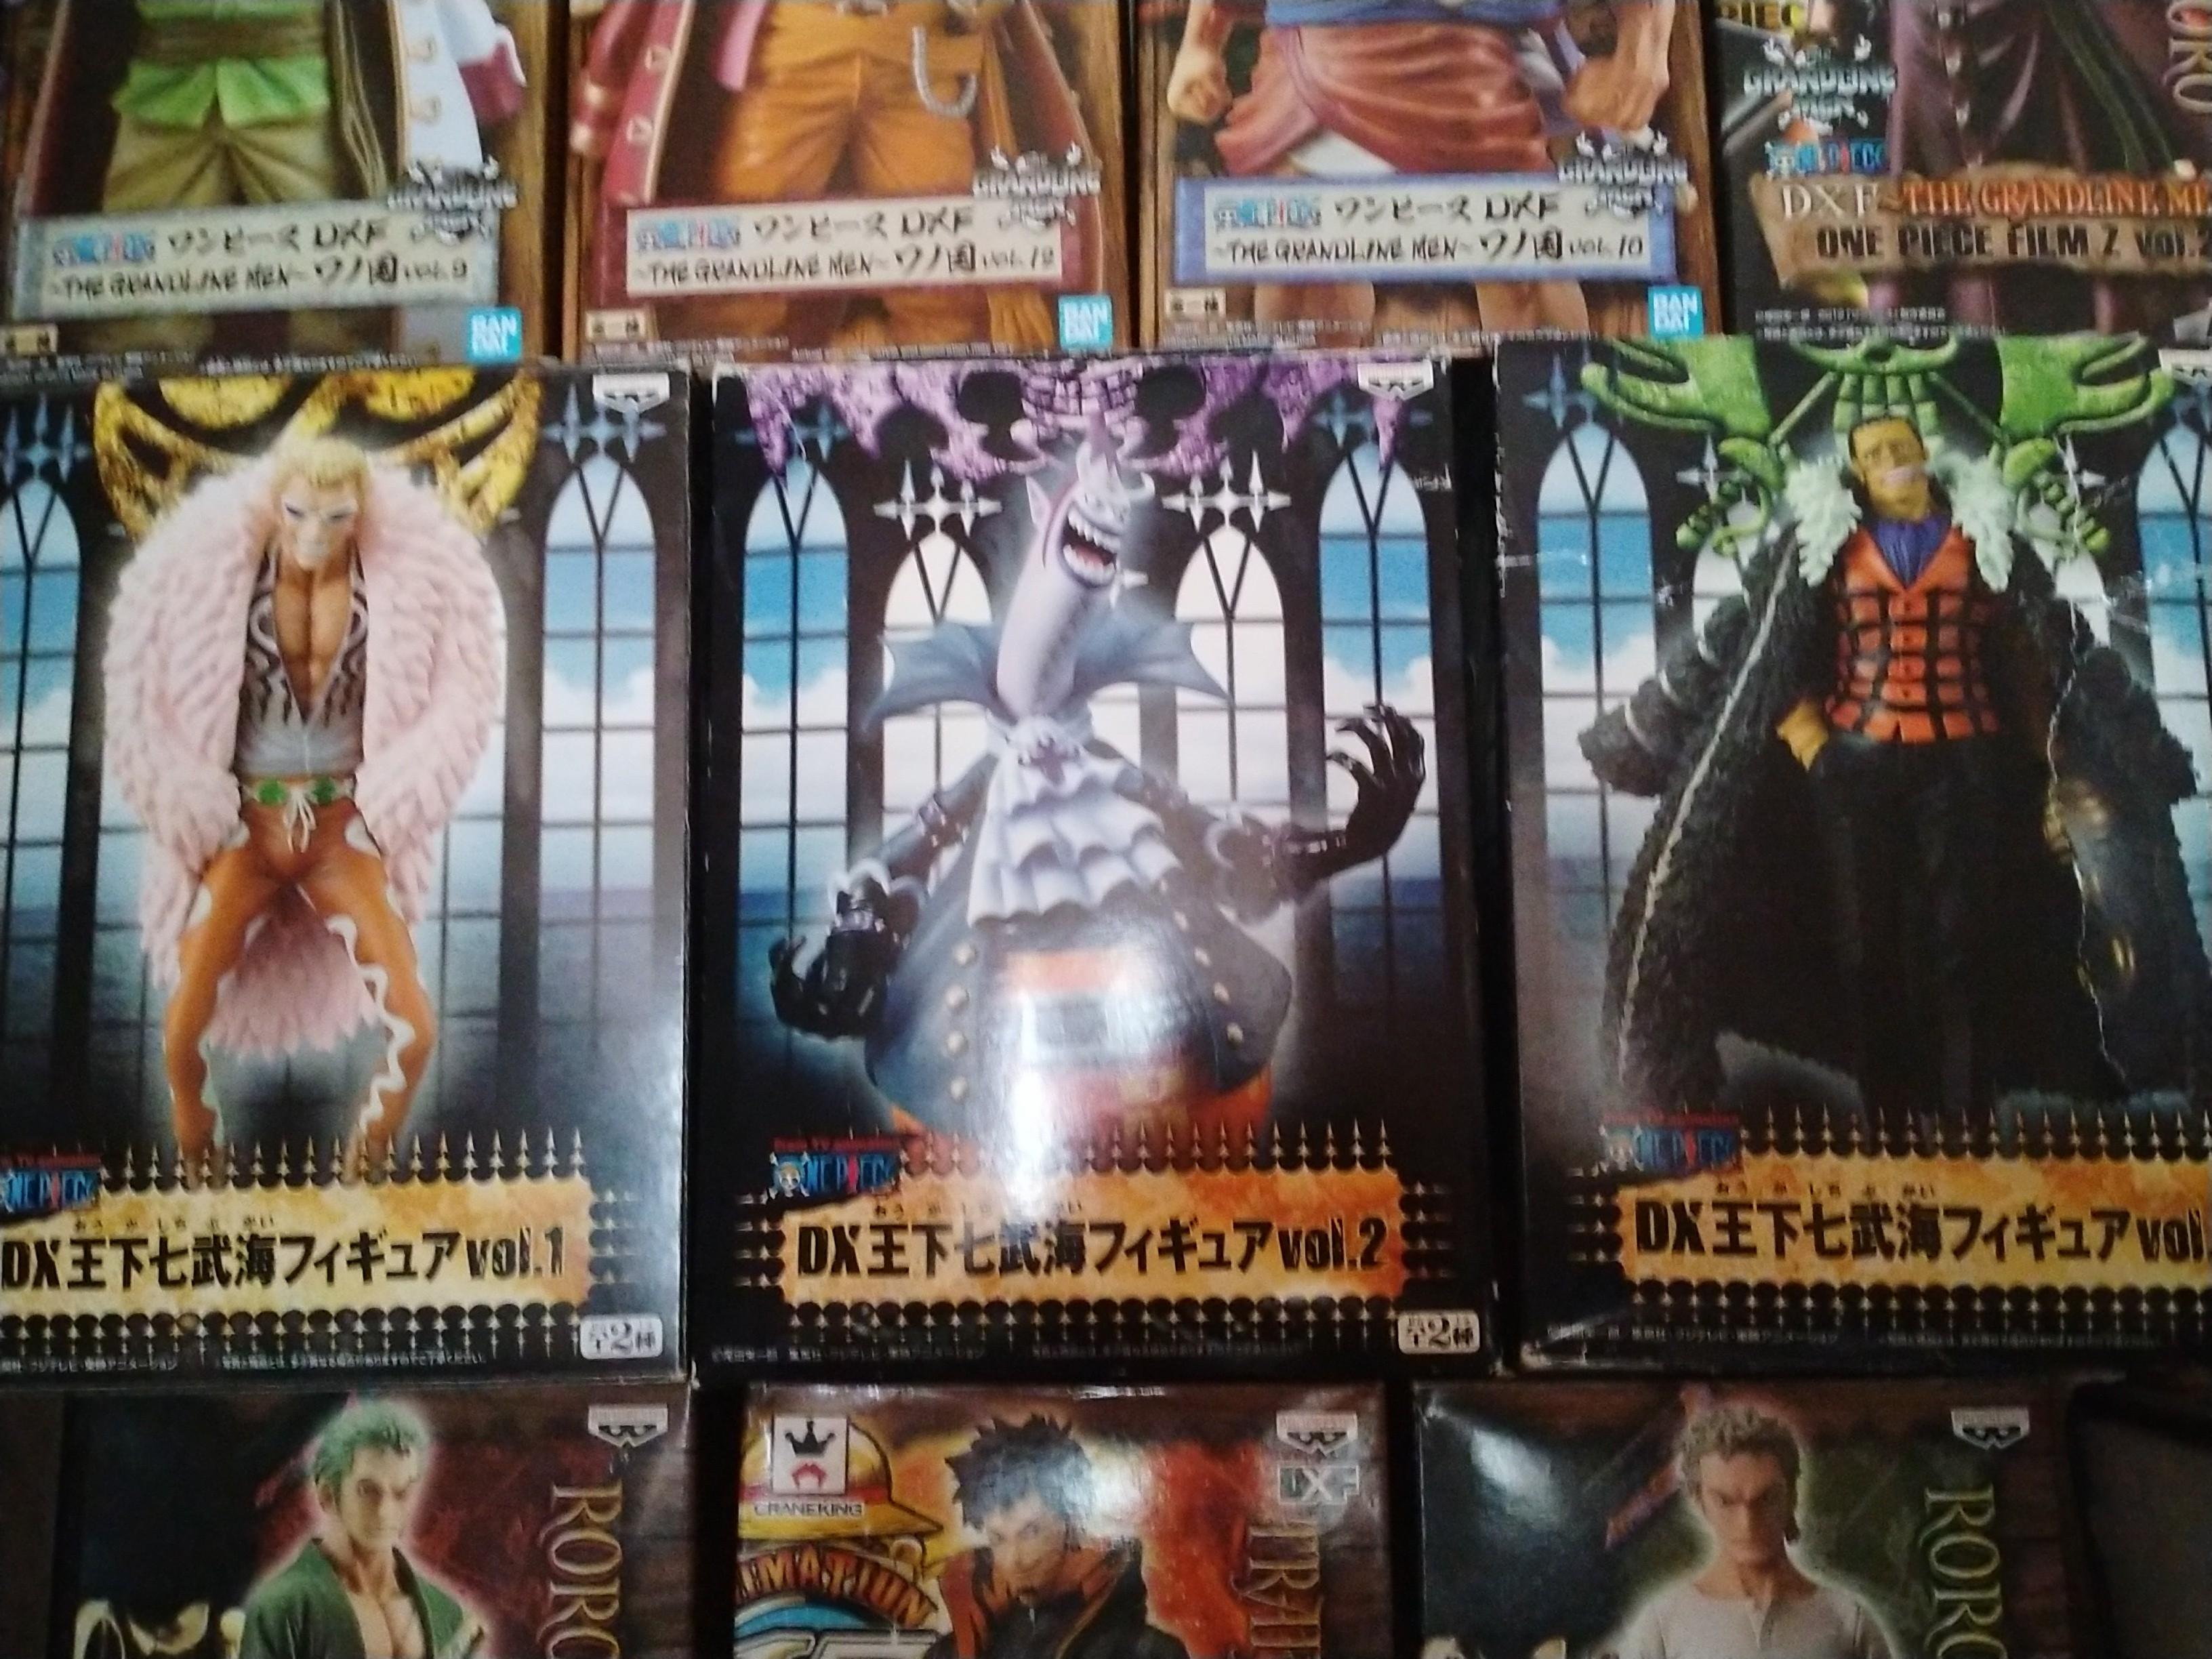 One Piece Dxf Shichibukai Doflamingo Original Bib Toys Games Action Figures Collectibles On Carousell